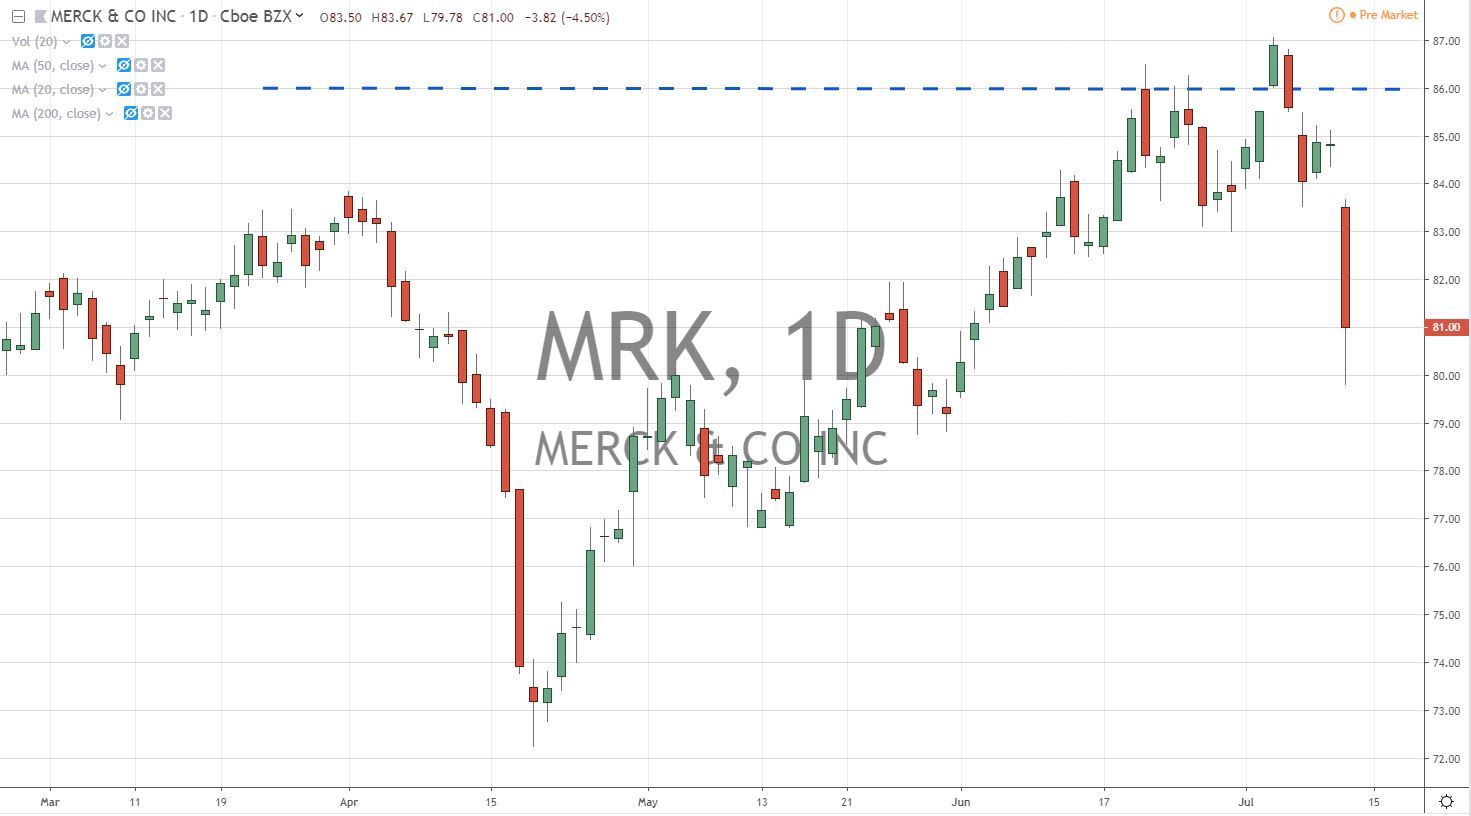 MRK Merk Co Stock Chart 7.12.19